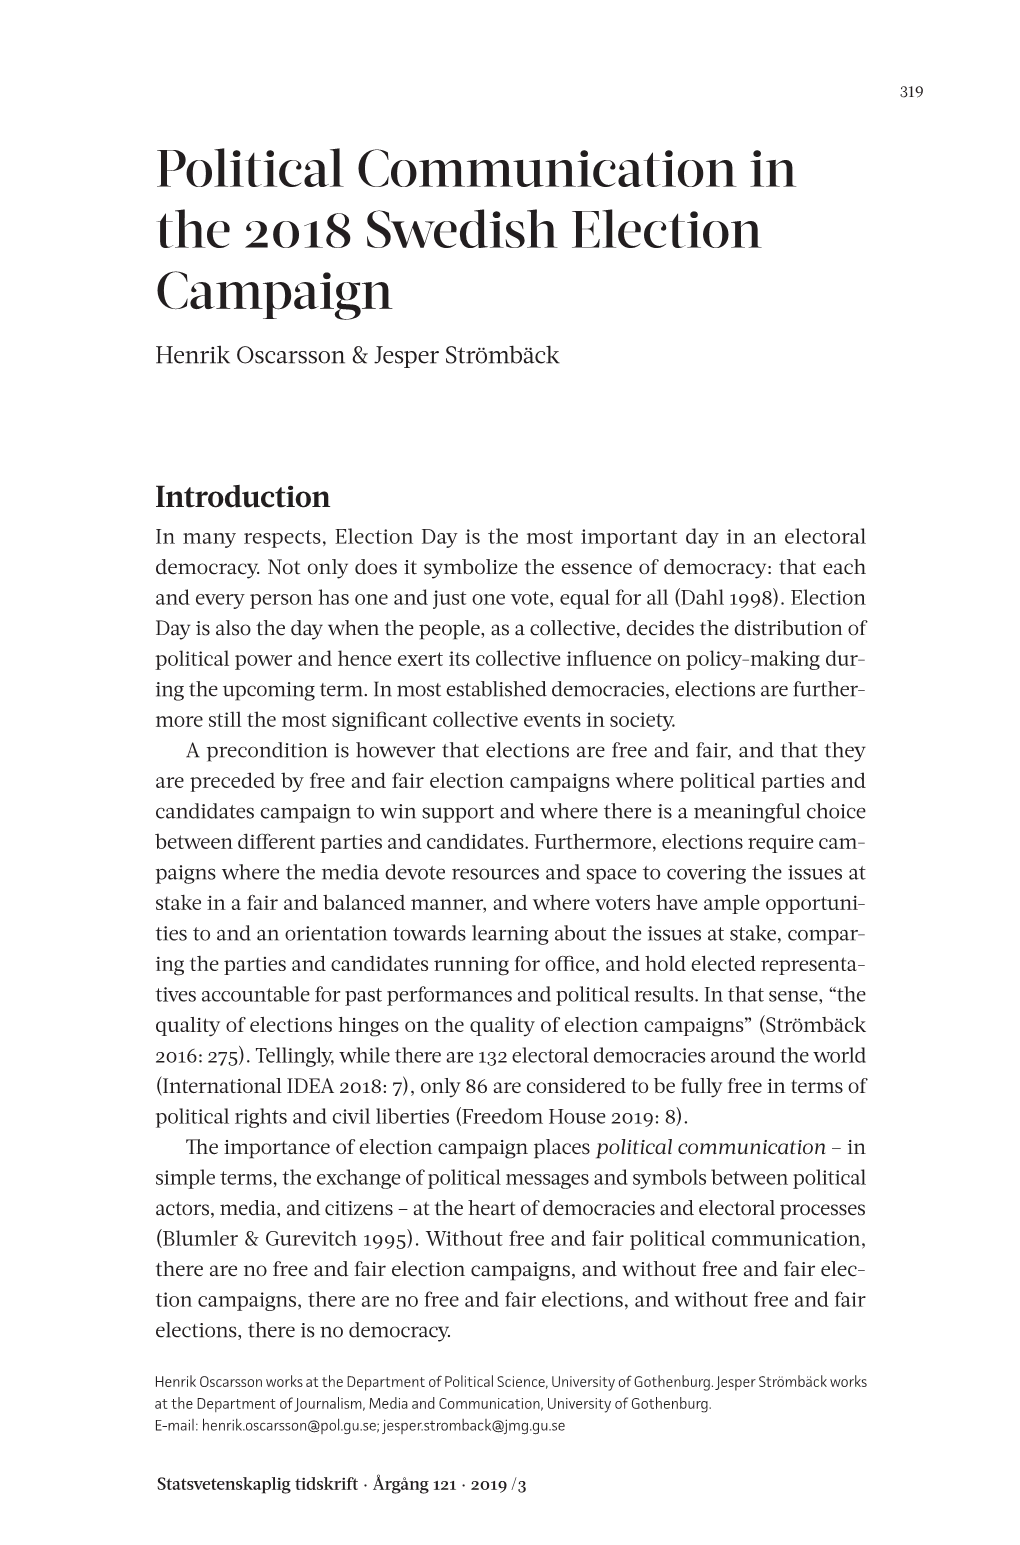 Political Communication in the 2018 Swedish Election Campaign Henrik Oscarsson & Jesper Strömbäck